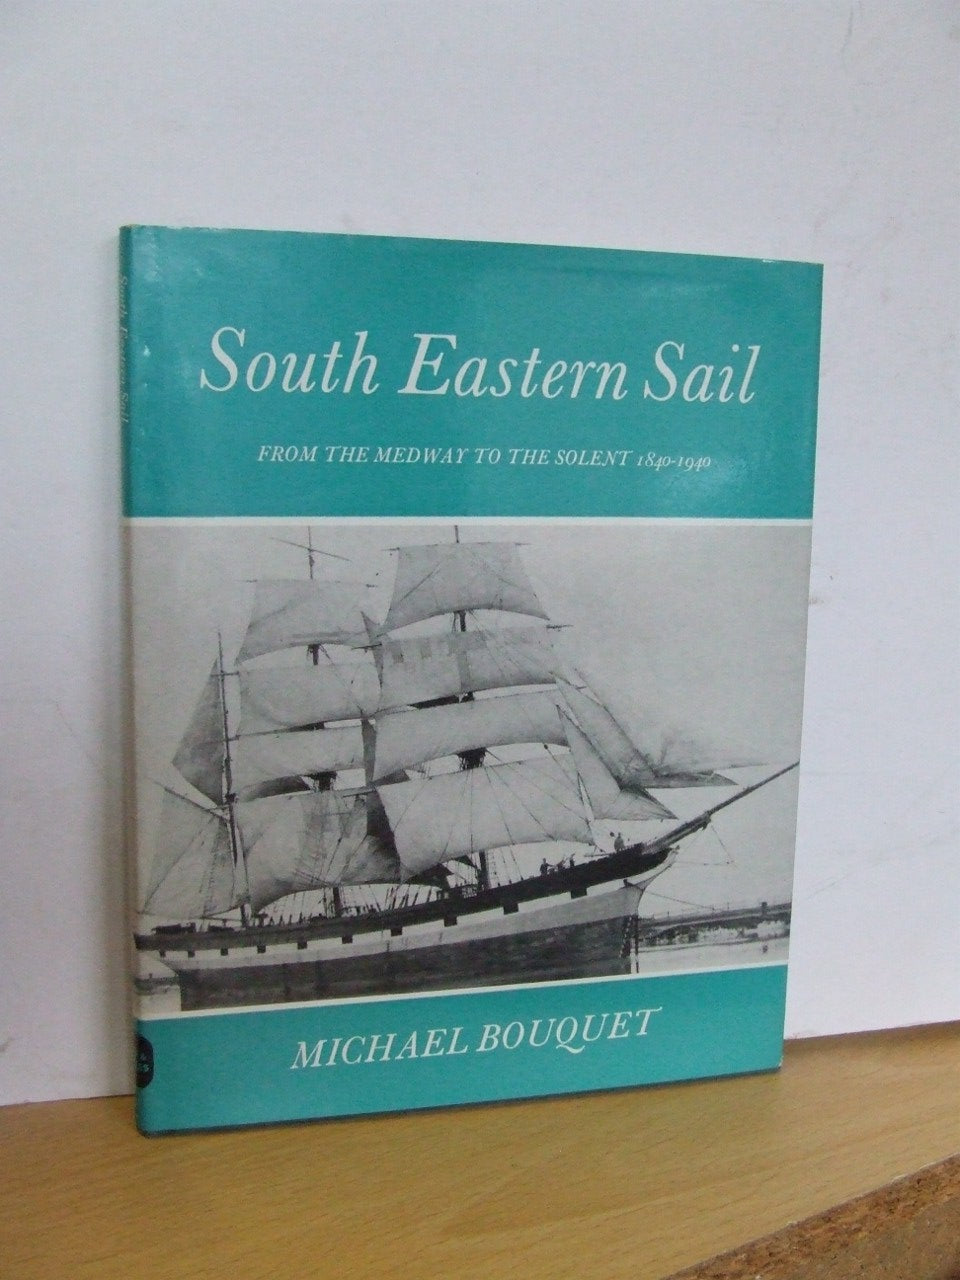 South Eastern Sail